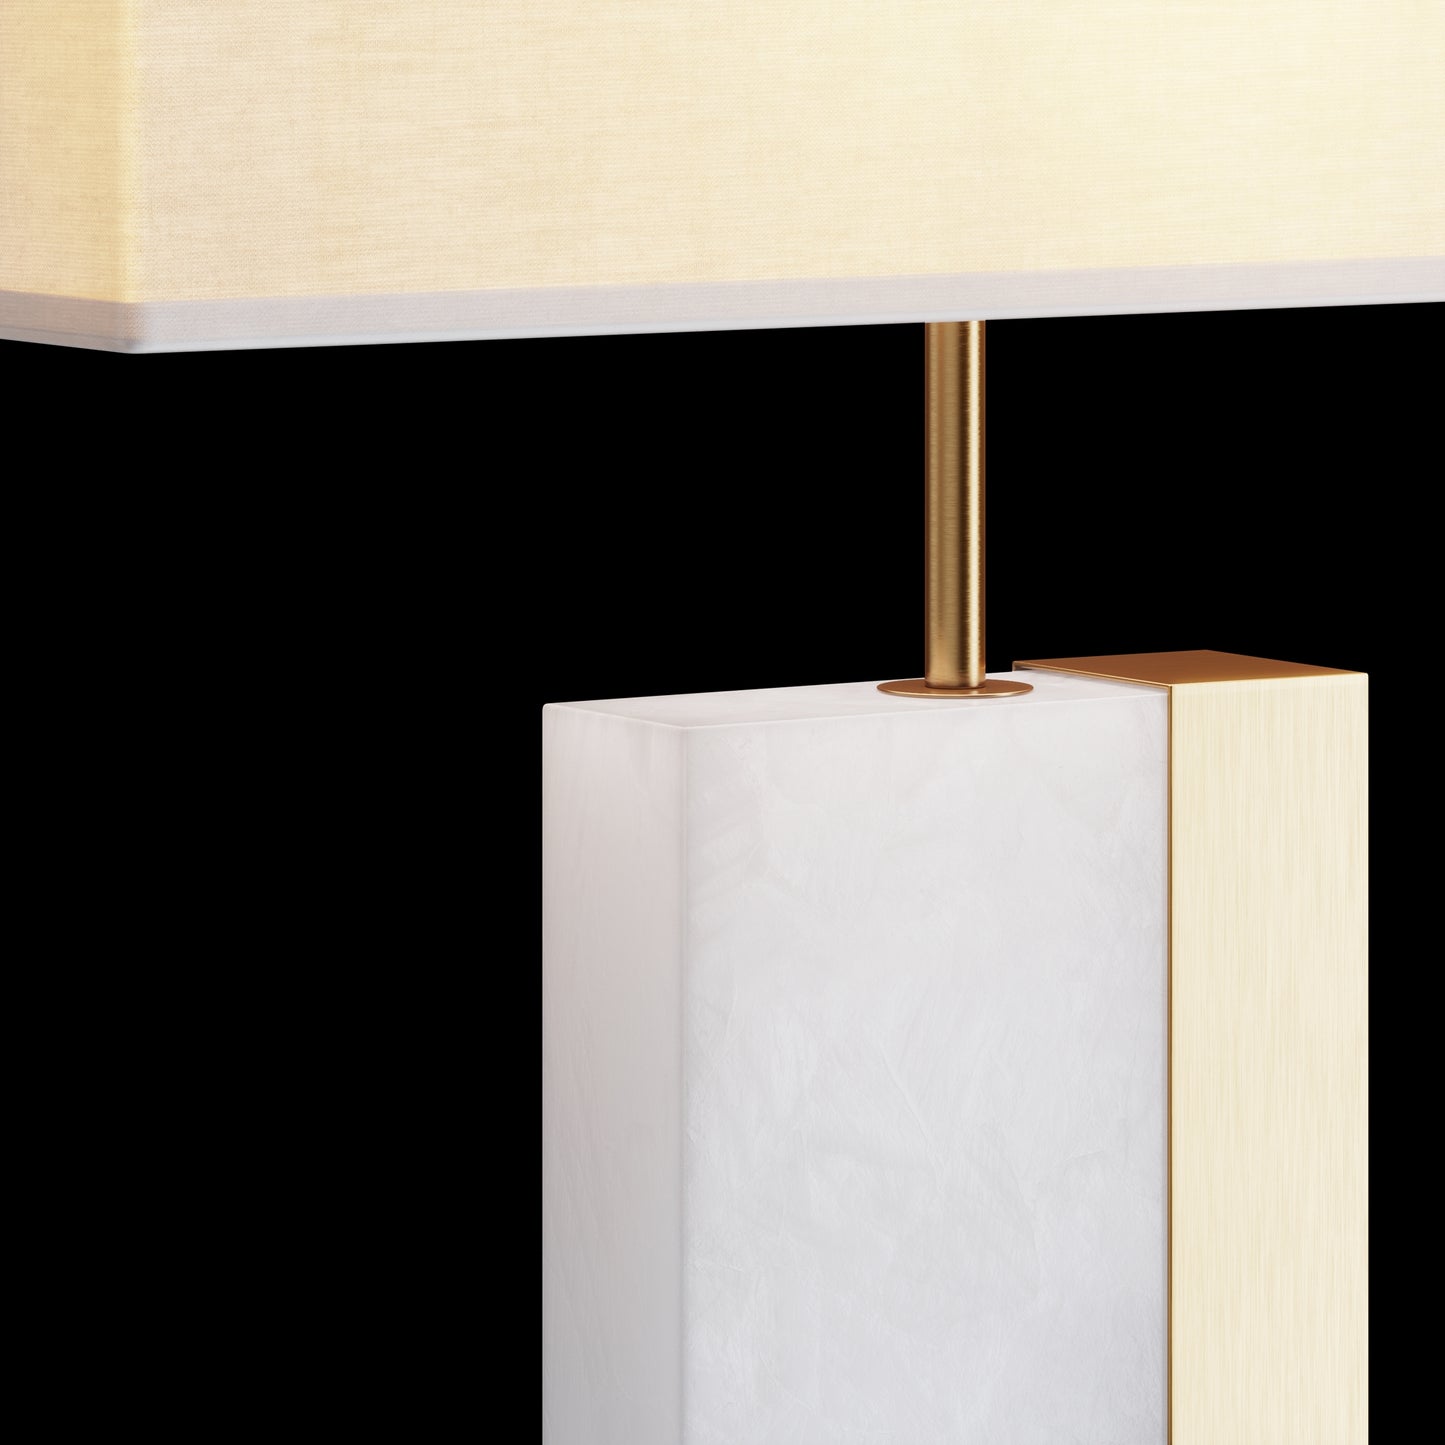 Une Lampe Blanche au style Ancien, design, classique et intemporelle à la fois.